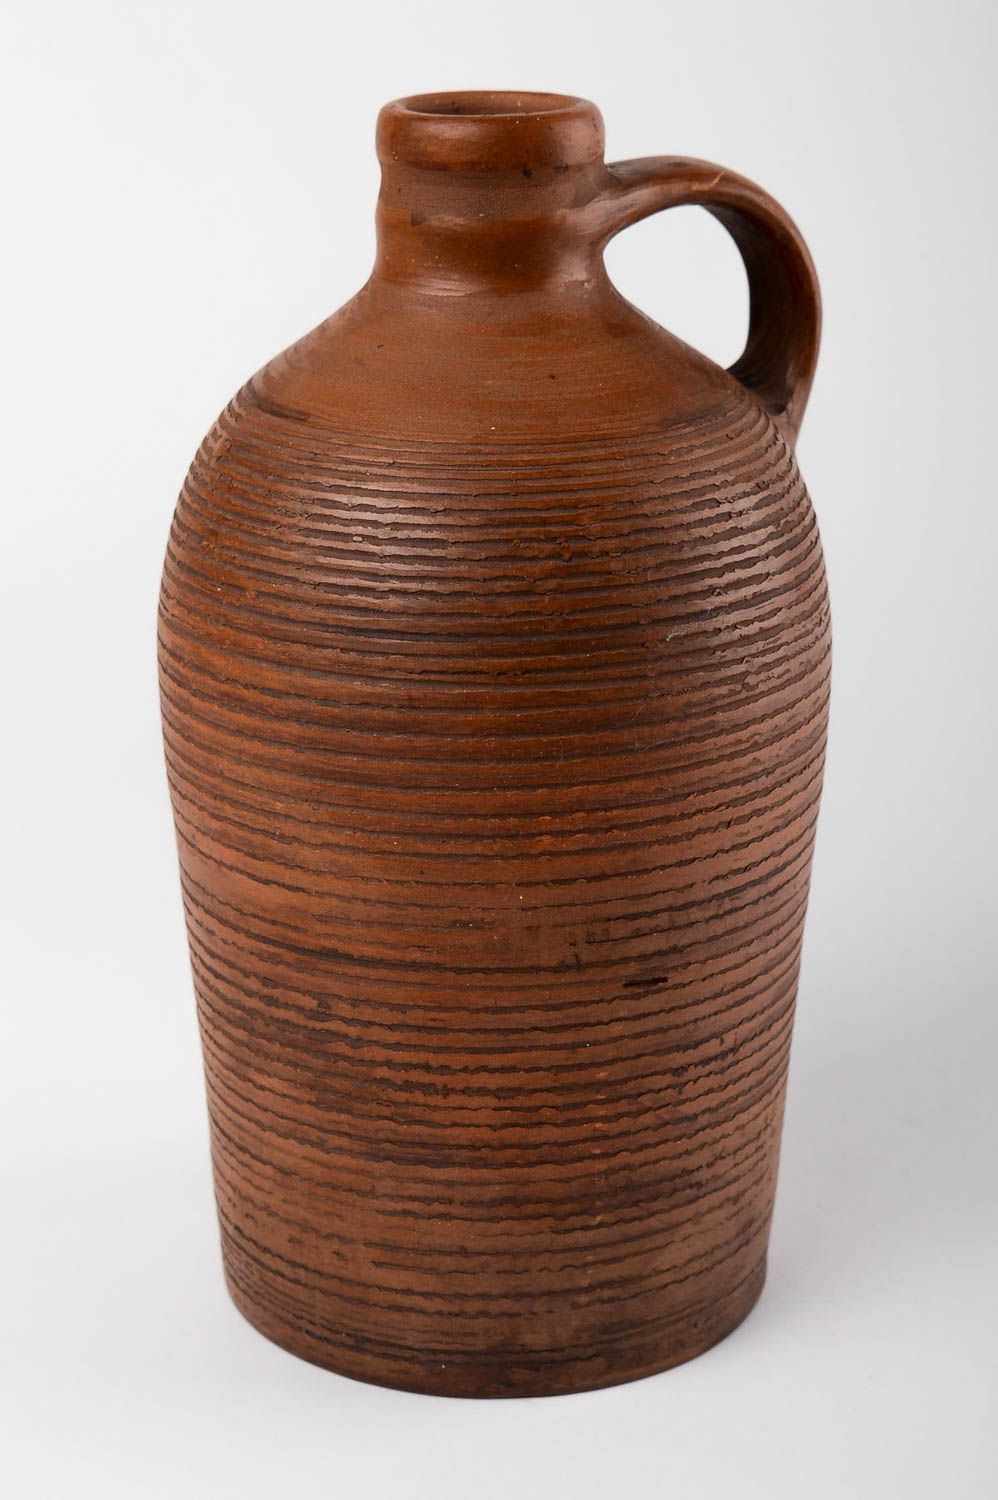 Handmade Flasche aus Ton Haus Deko Geschenk Flasche Keramik Geschirr schön foto 3